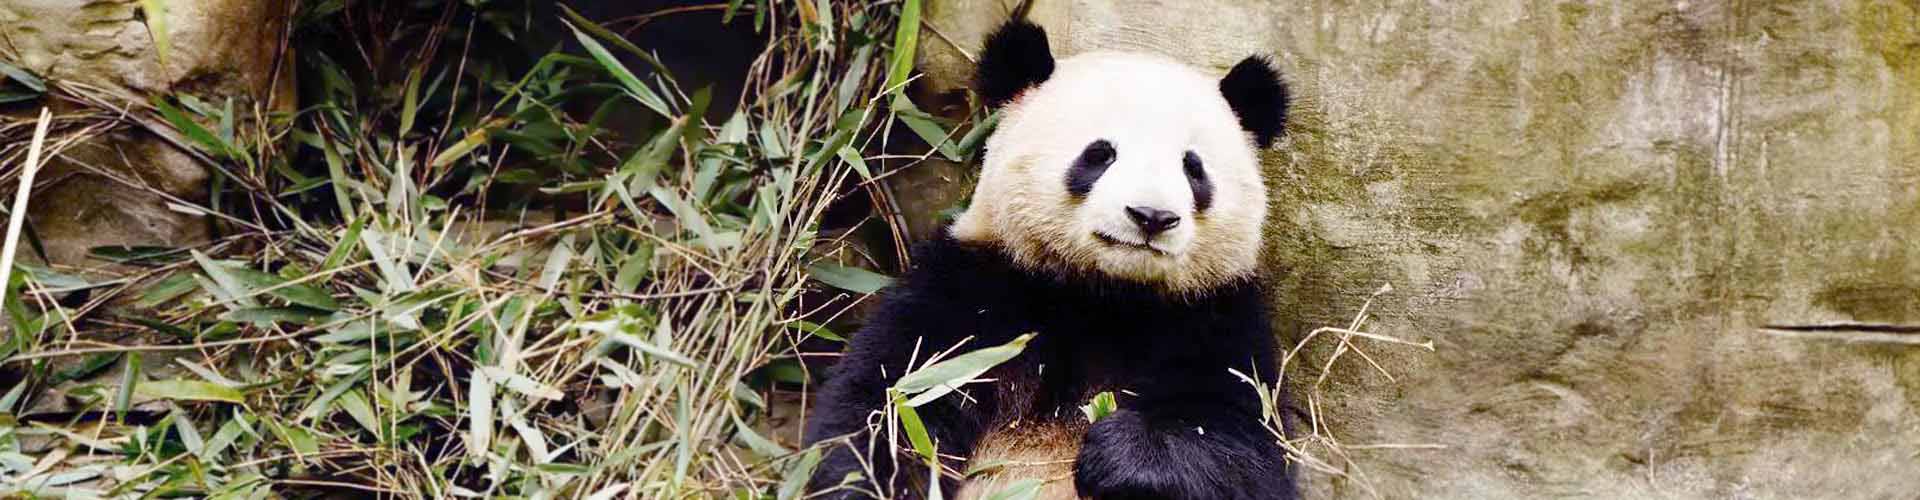 panda dans la réserve du panda 